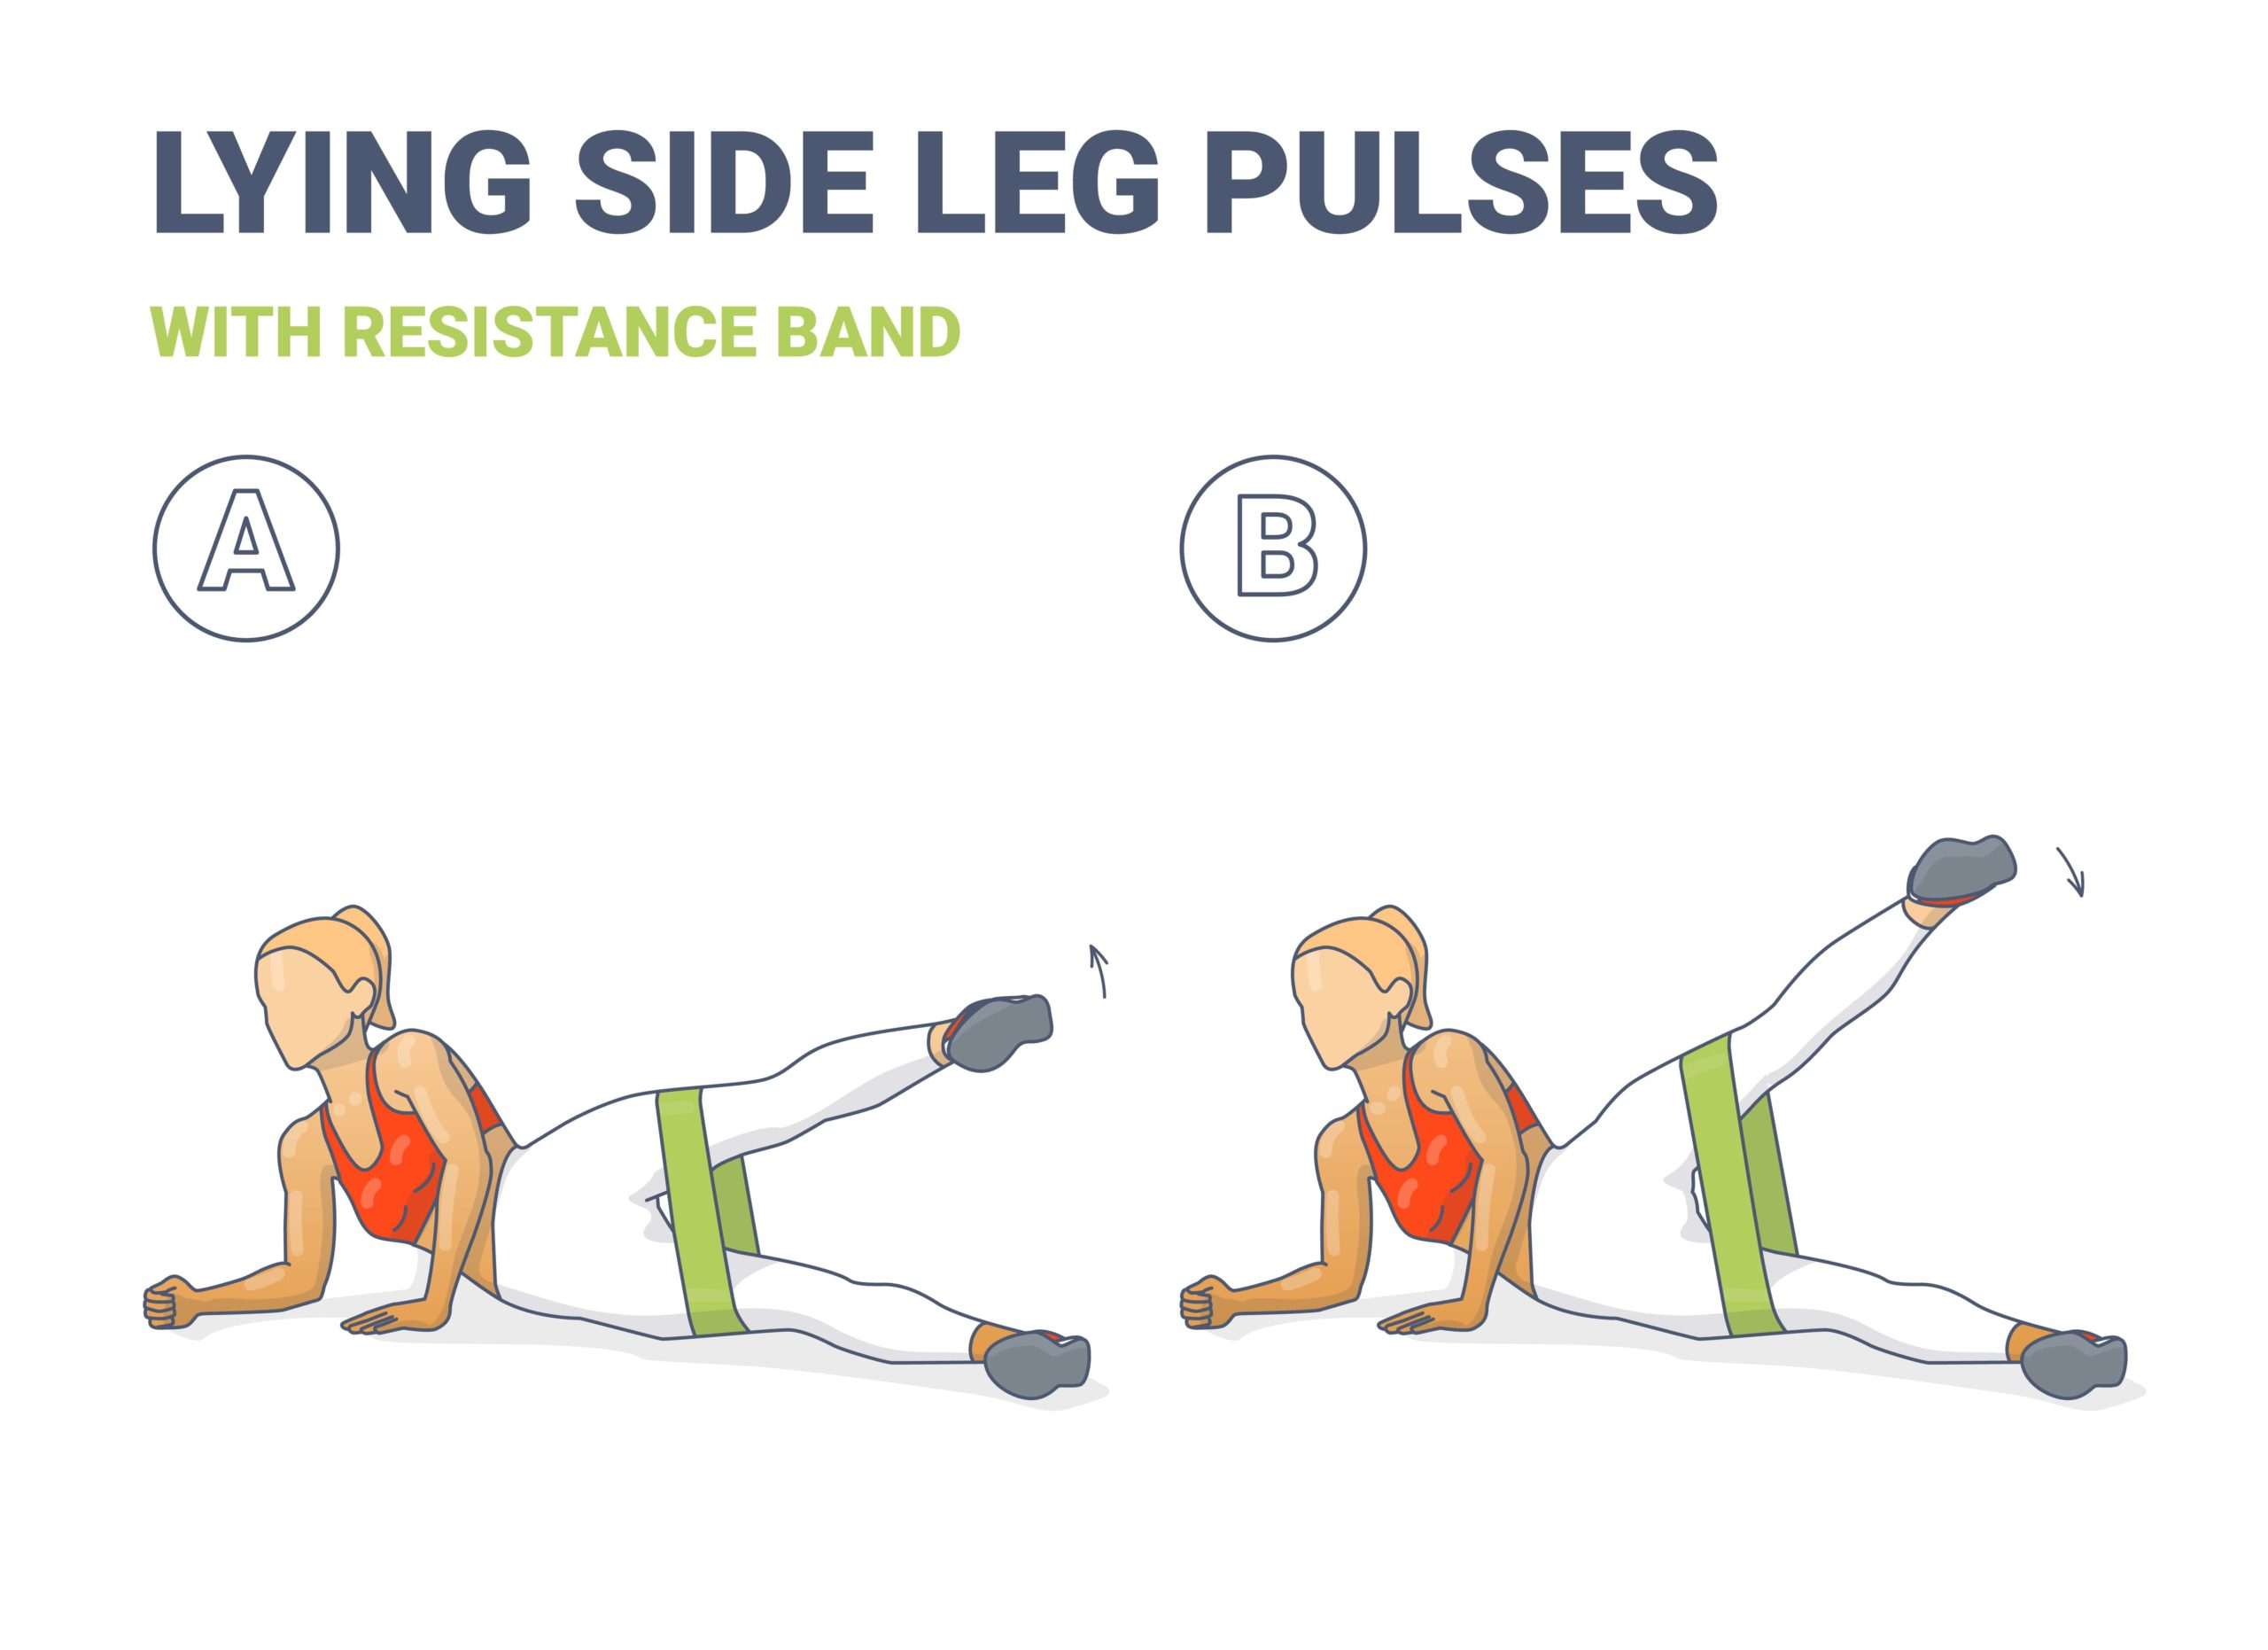 Exercice n°5 : Lying side leg pulses 